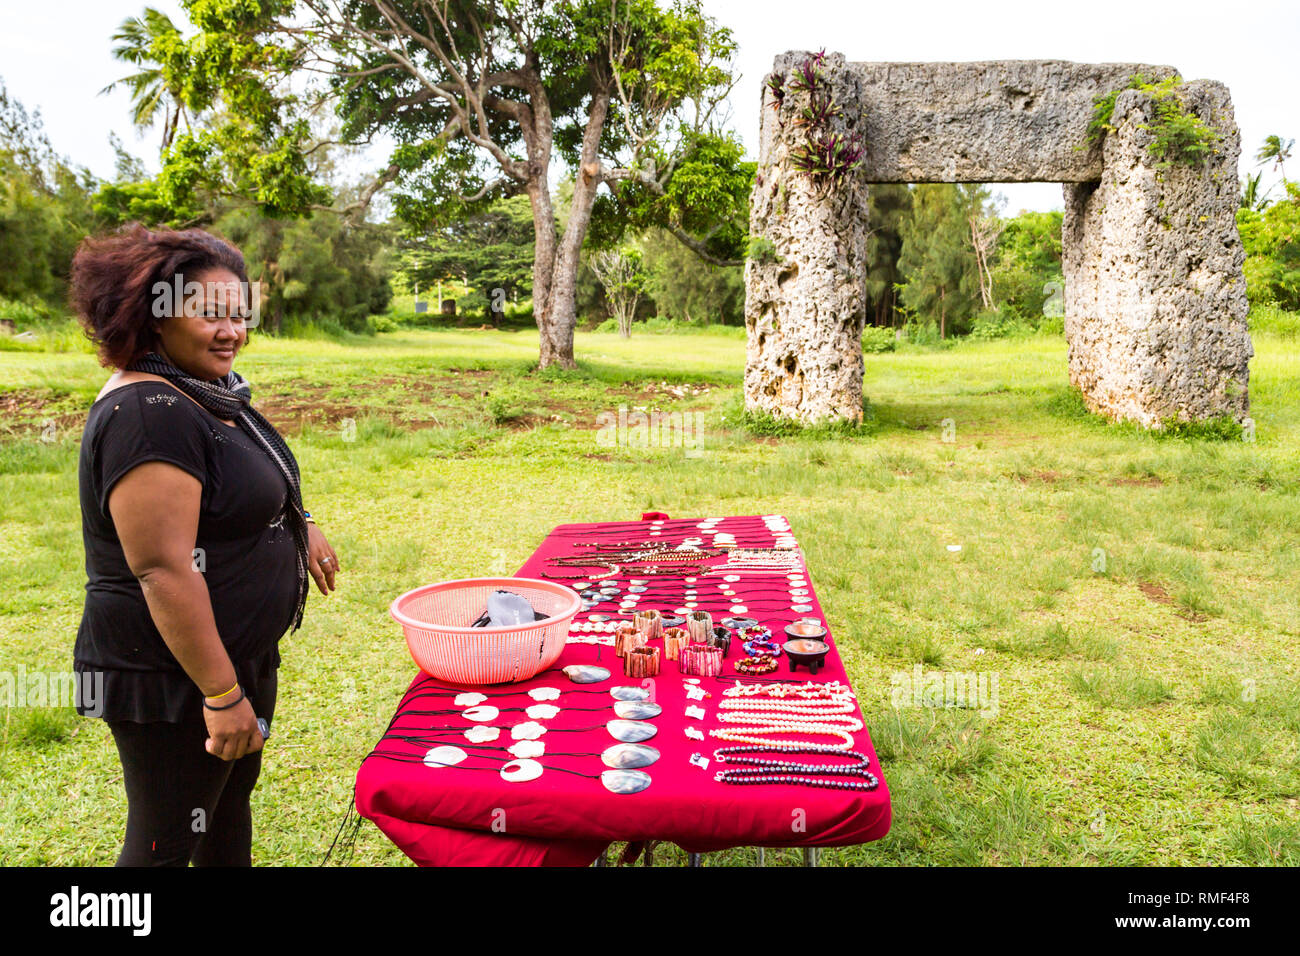 Tongatapu, Tonga - Jan 10 2014: A vendor is selling souvenirs to tourists at Haamonga a Maui, Ha'amonga 'a Maui, or Burden of Maui site, a stone trili Stock Photo